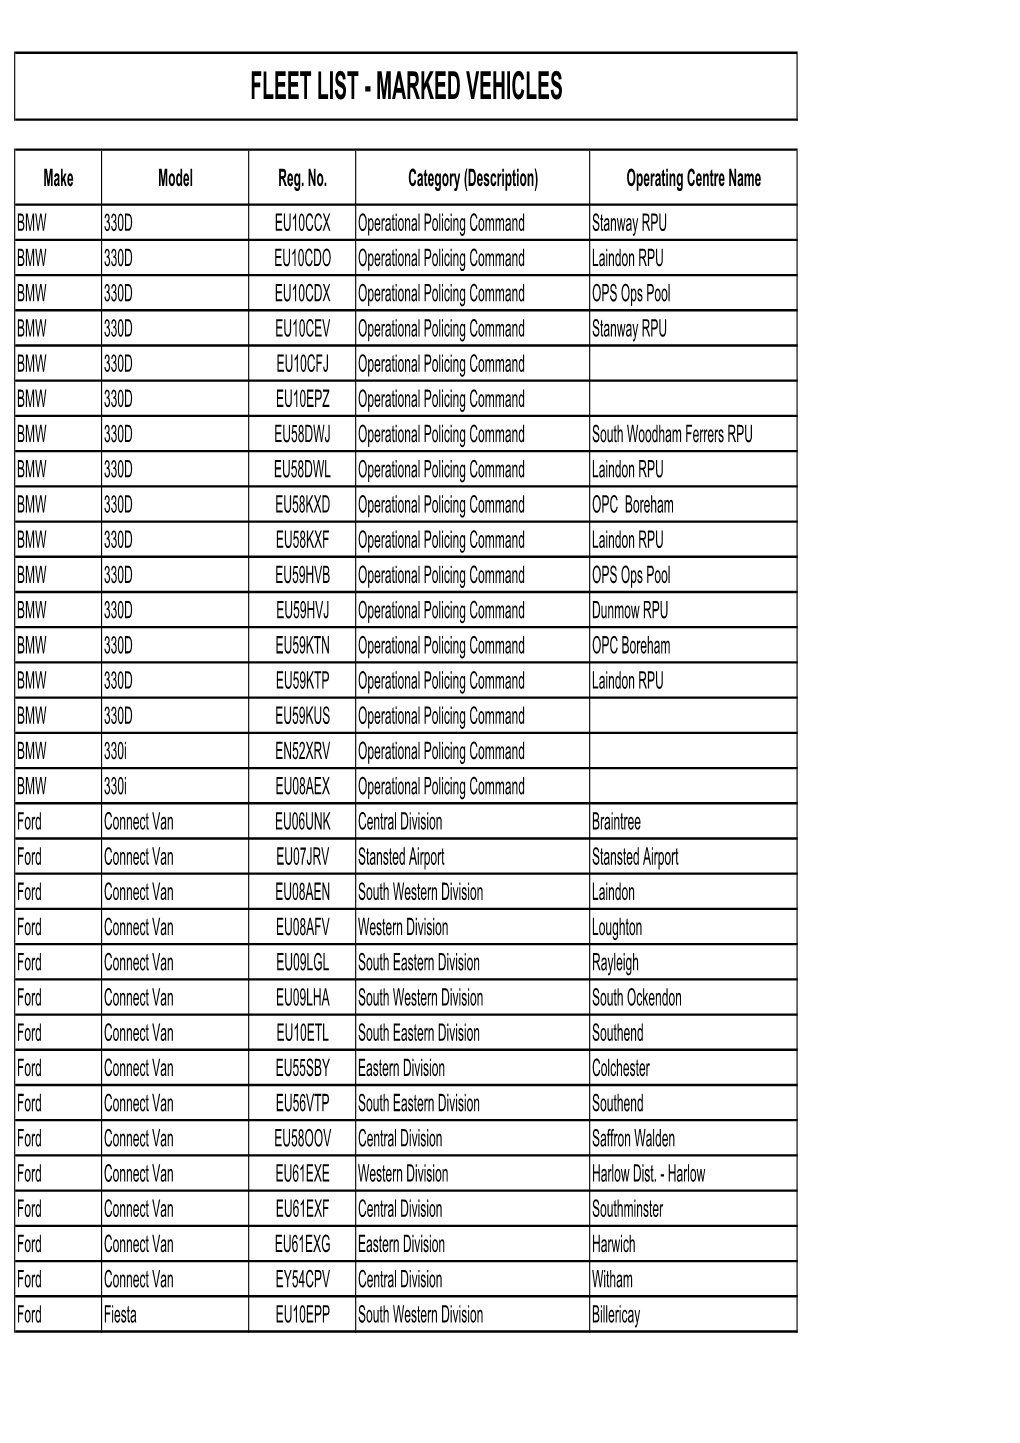 Fleet List - Marked Vehicles